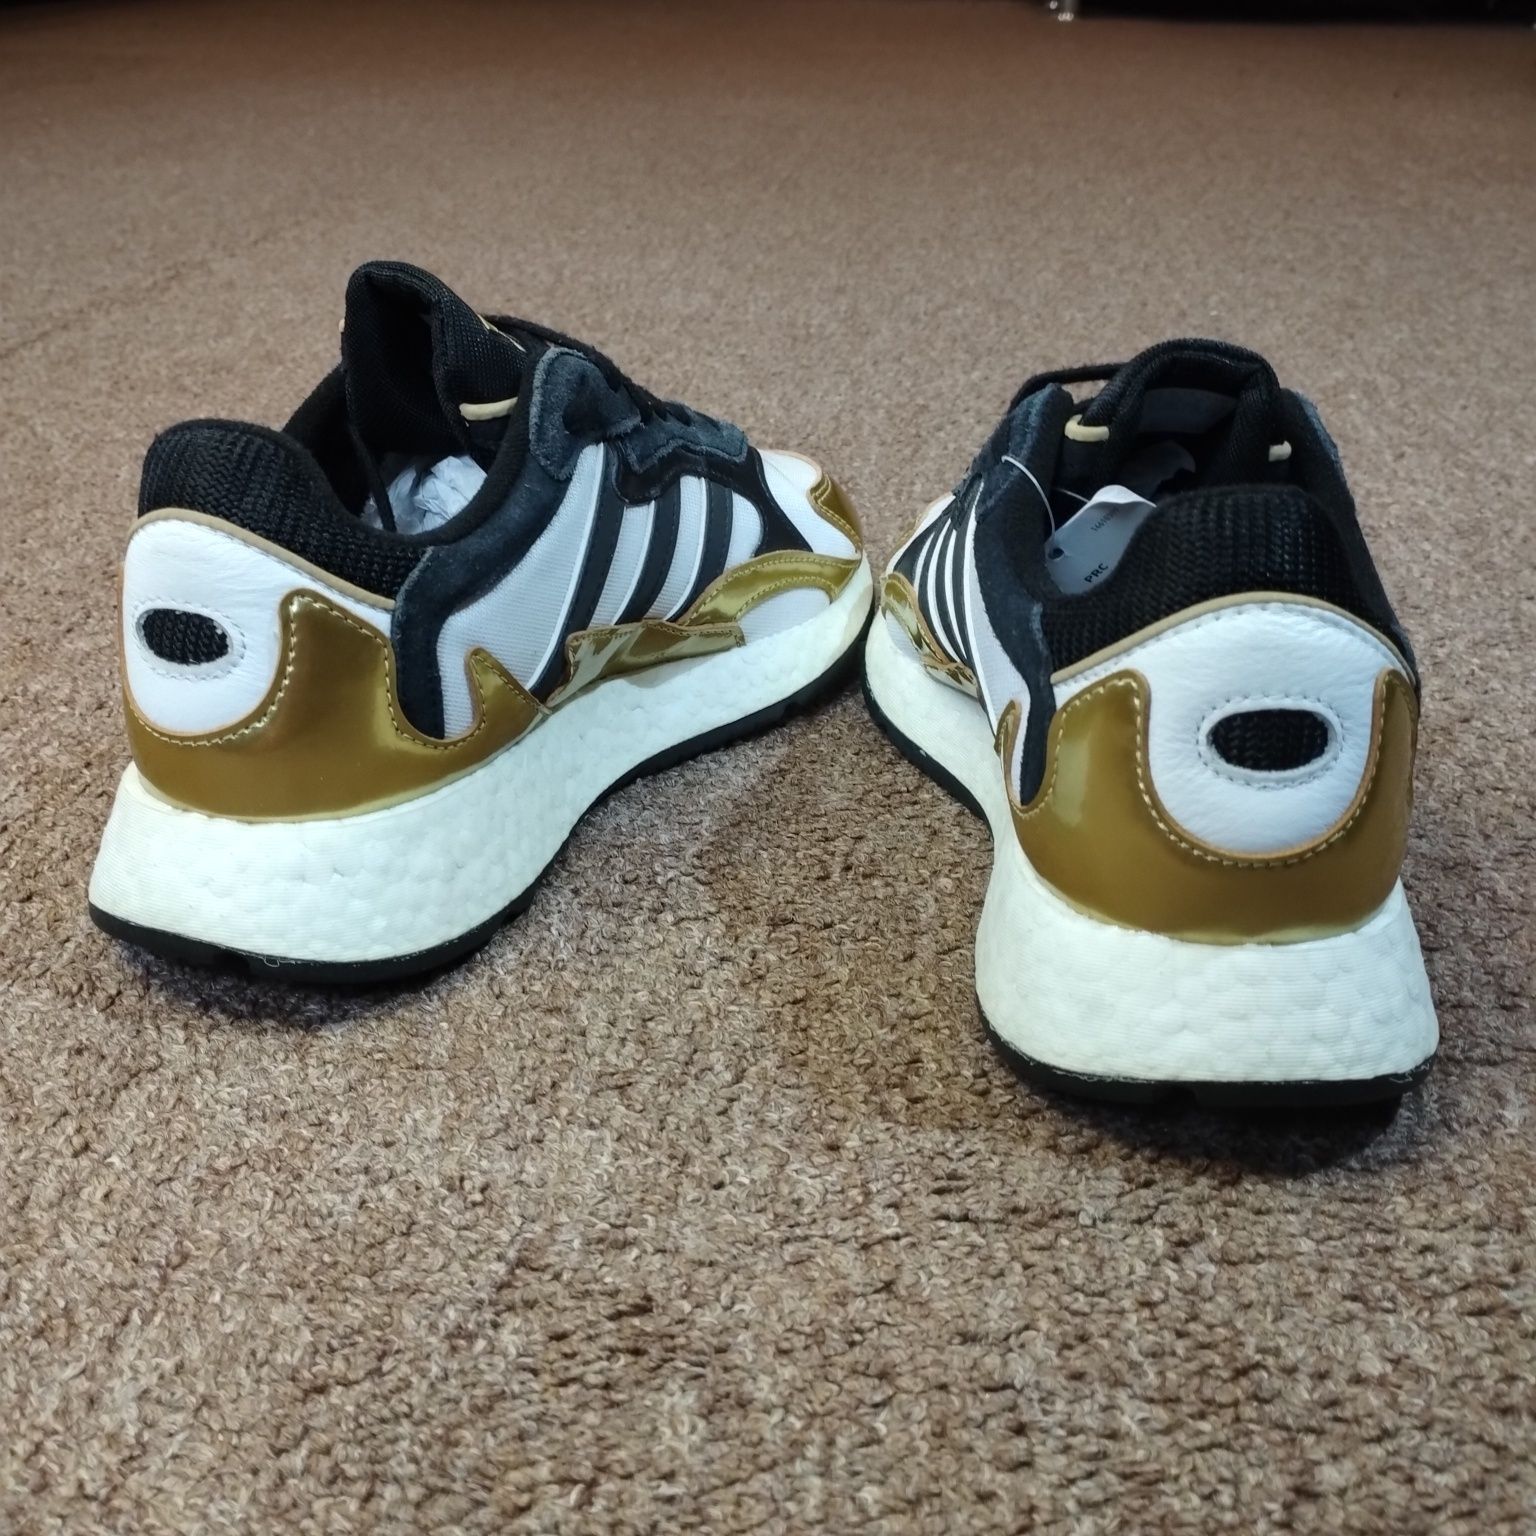 37,38,39. Кросівки Adidas Originals Tresc Jordan Eg5664. Оригінал